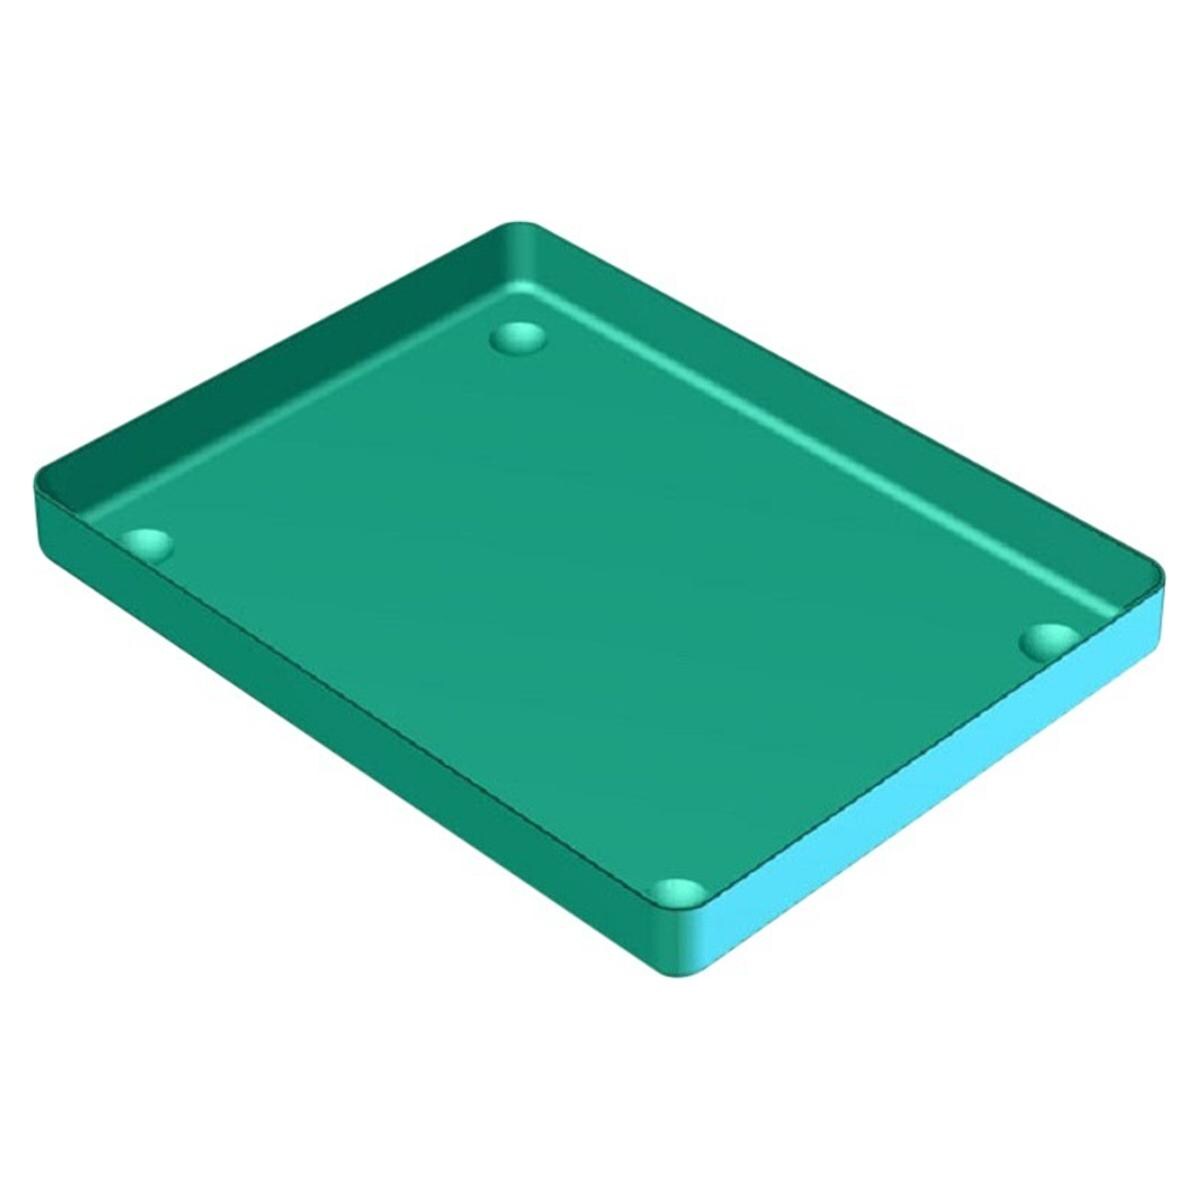 Aluminium Tray - 18 x 14 cm, groen